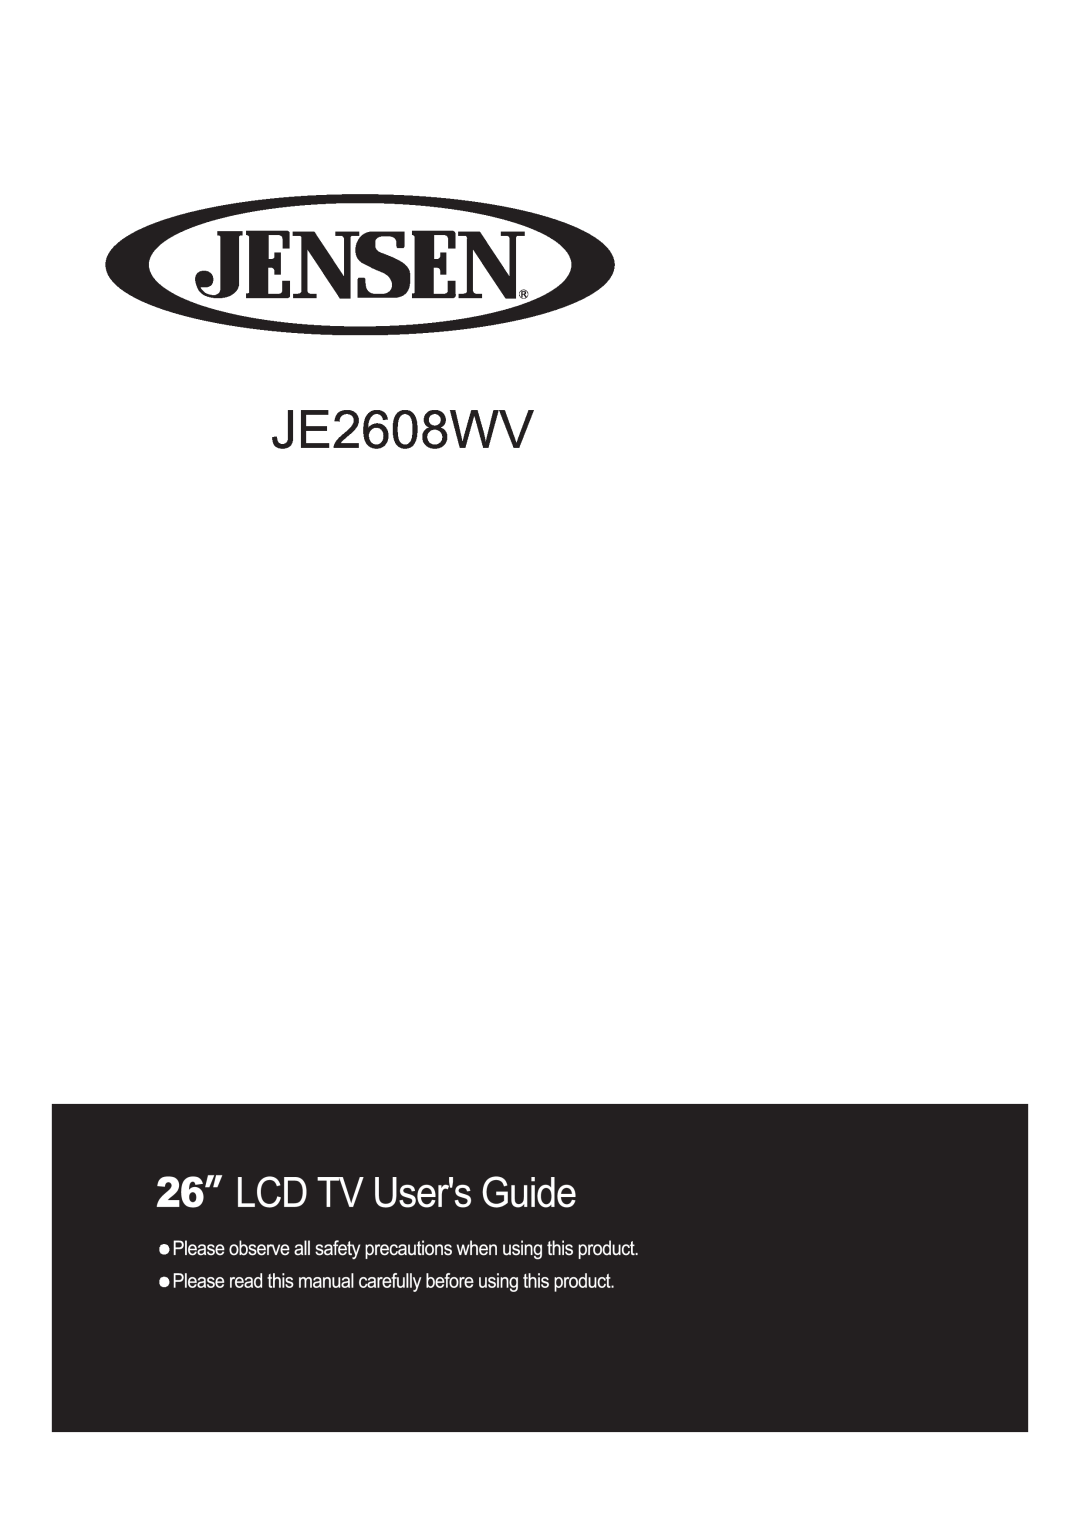 Jensen JE2608WV manual 